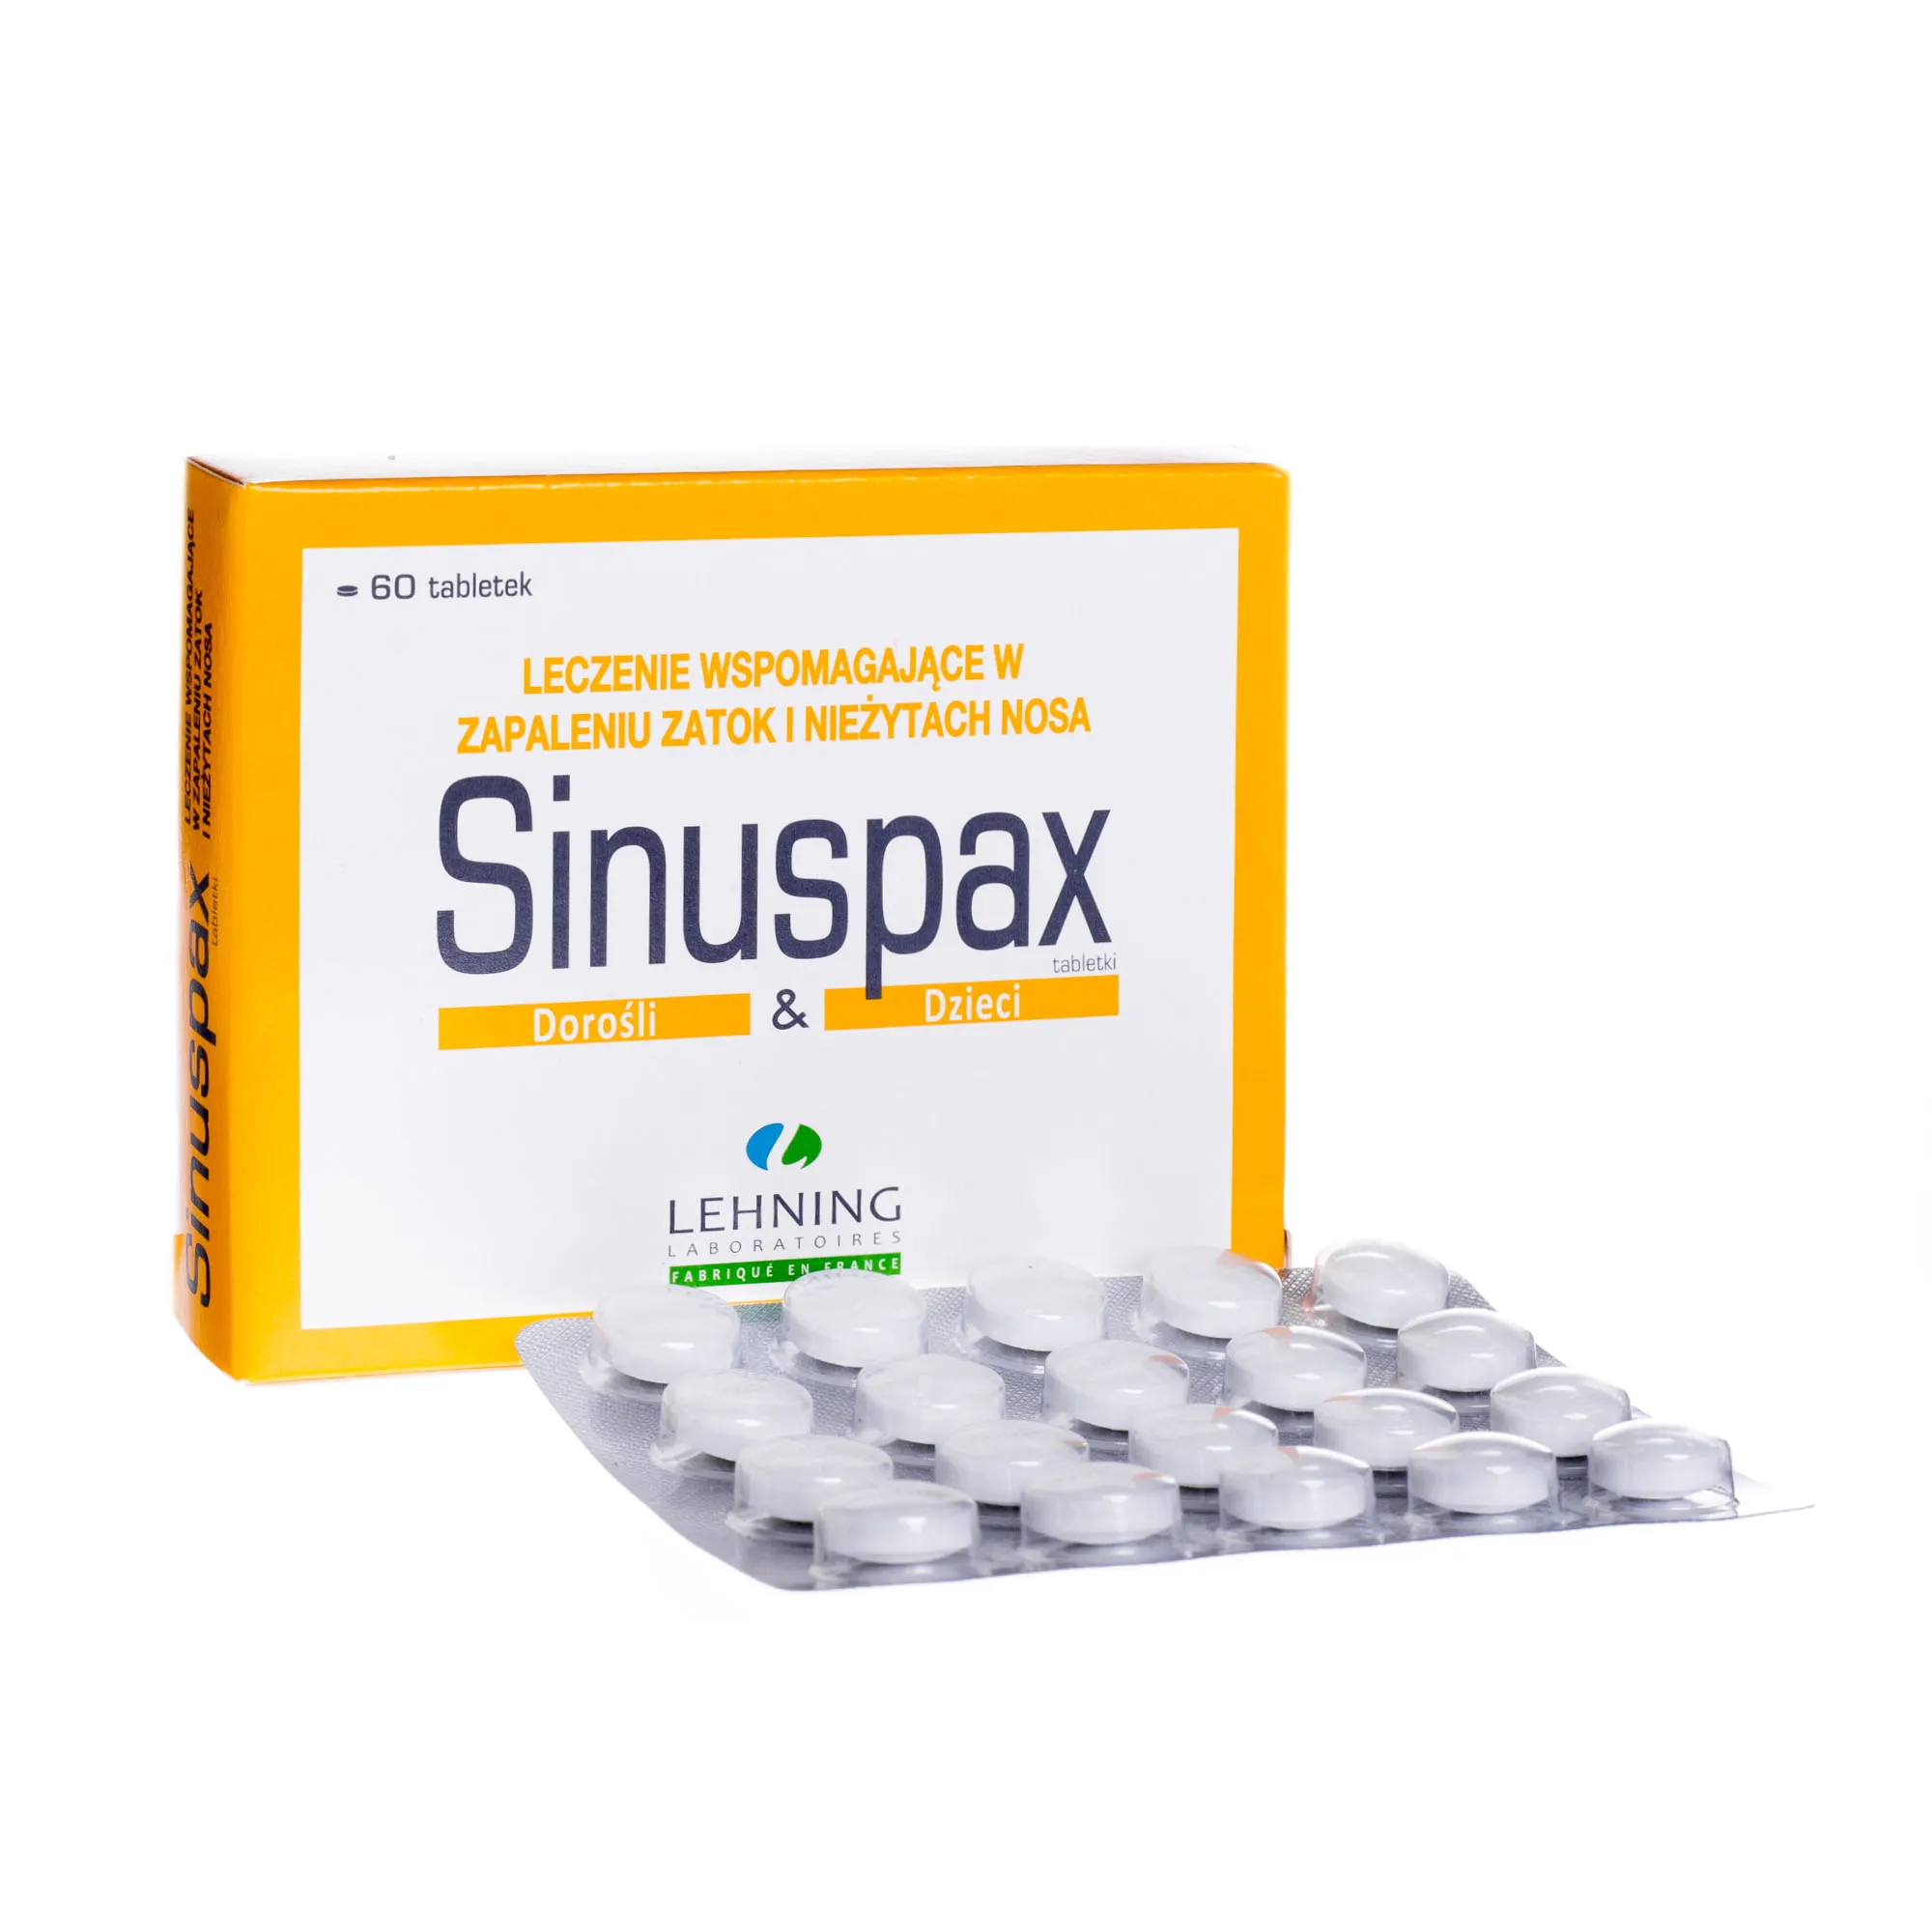 Lehning Sinuspax Dorośli i dzieci, homeopatyczny produkt leczniczy, 60 tabletek